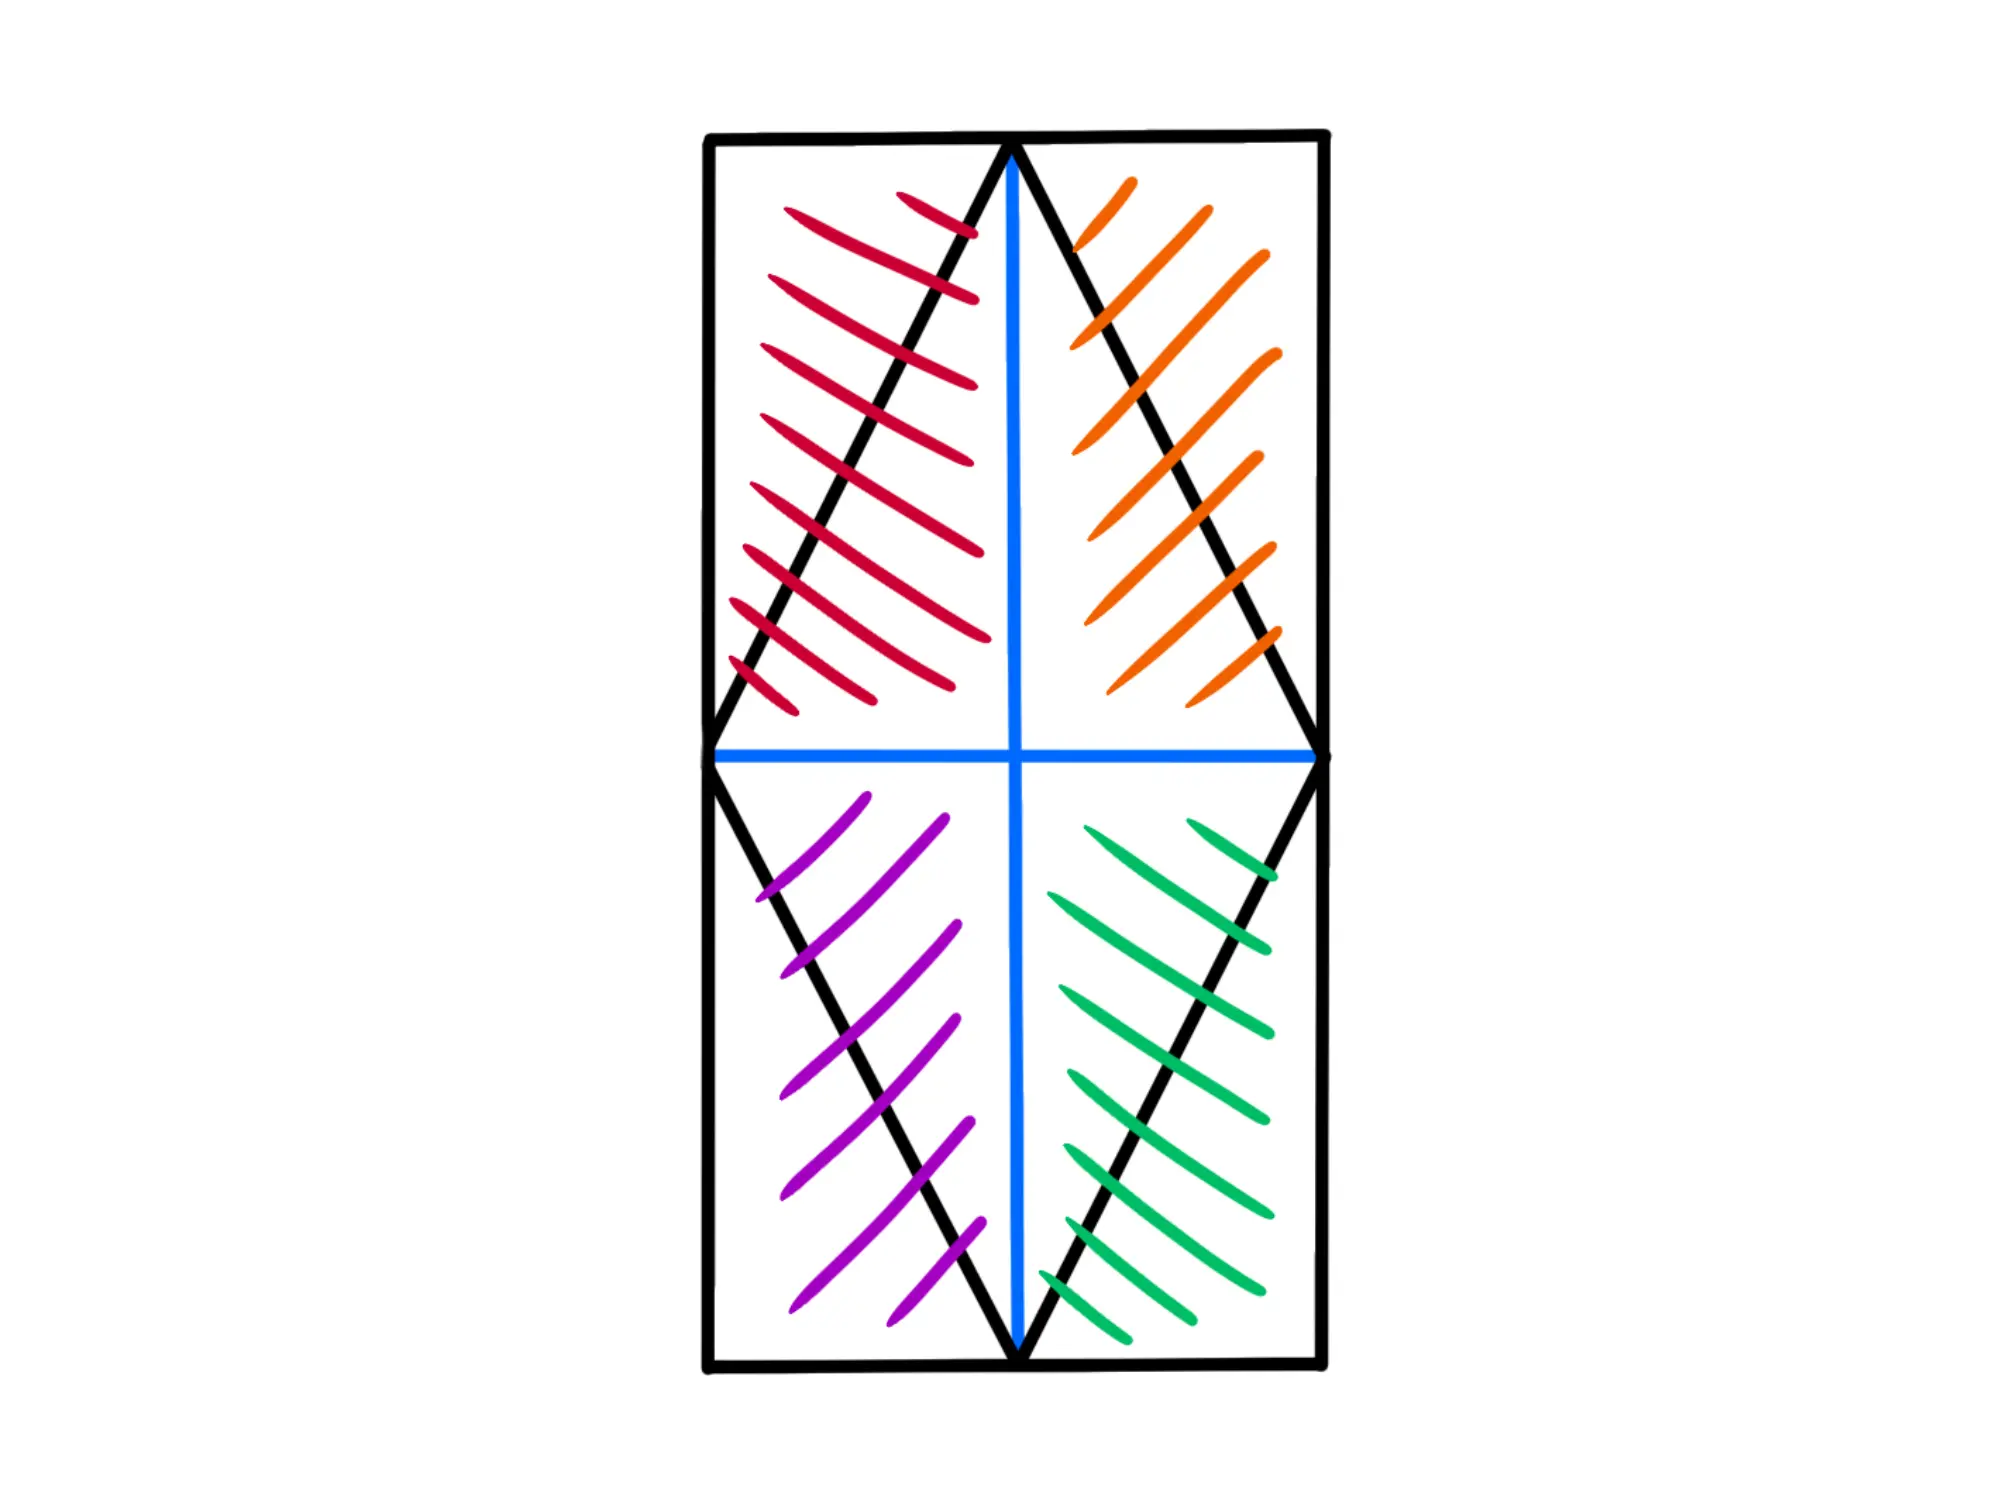 Rettangolini in cui il rombo divide il rettangolo